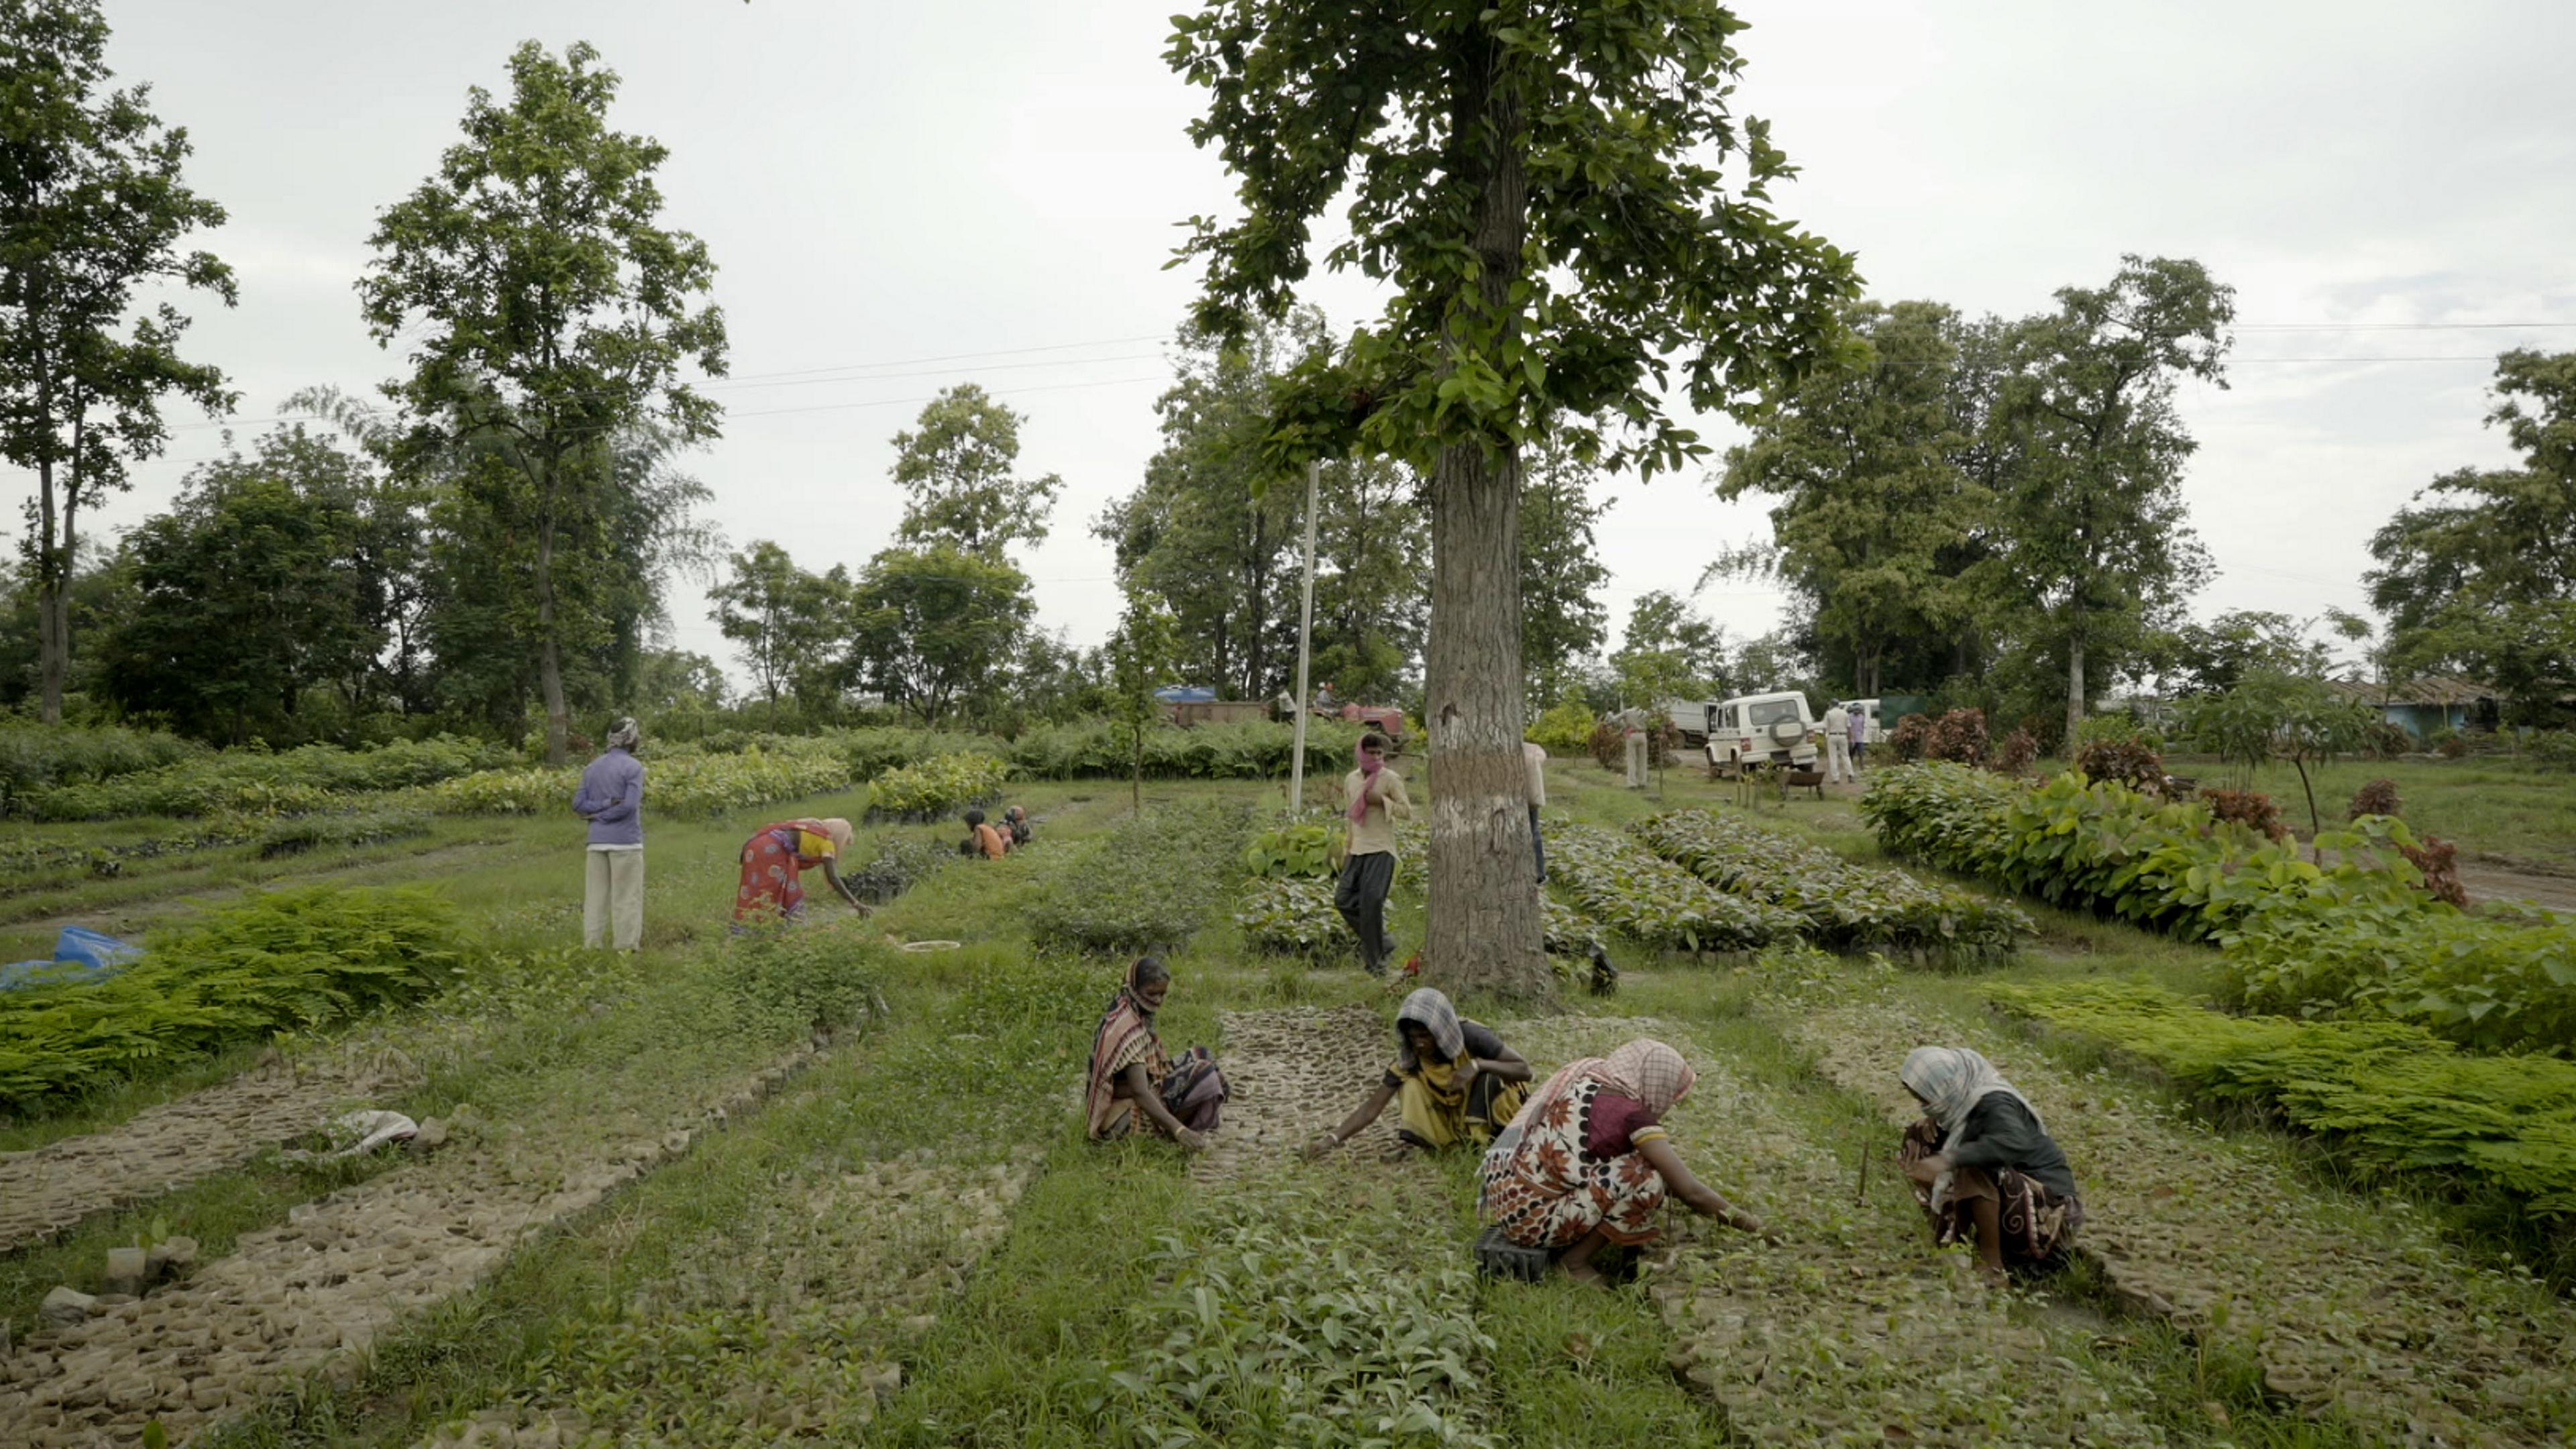 Baumsetzlinge werden in Indien gezüchtet